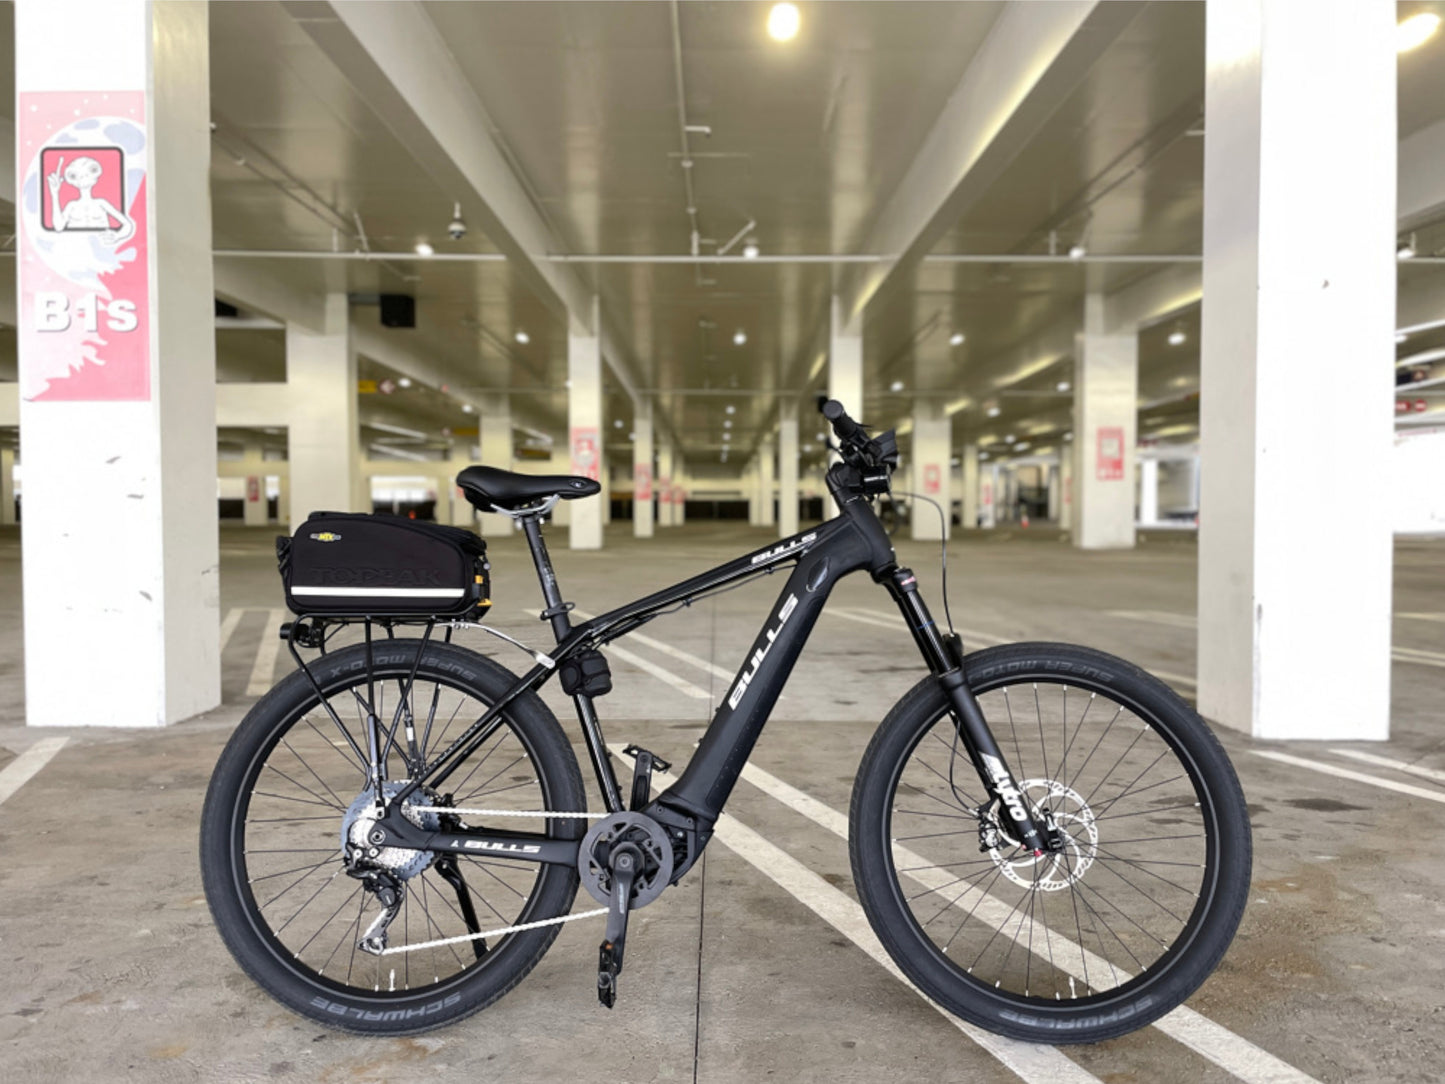 Bulls Sentinel 3 eMTB hardtail bike Chrome black side profile in parking garage